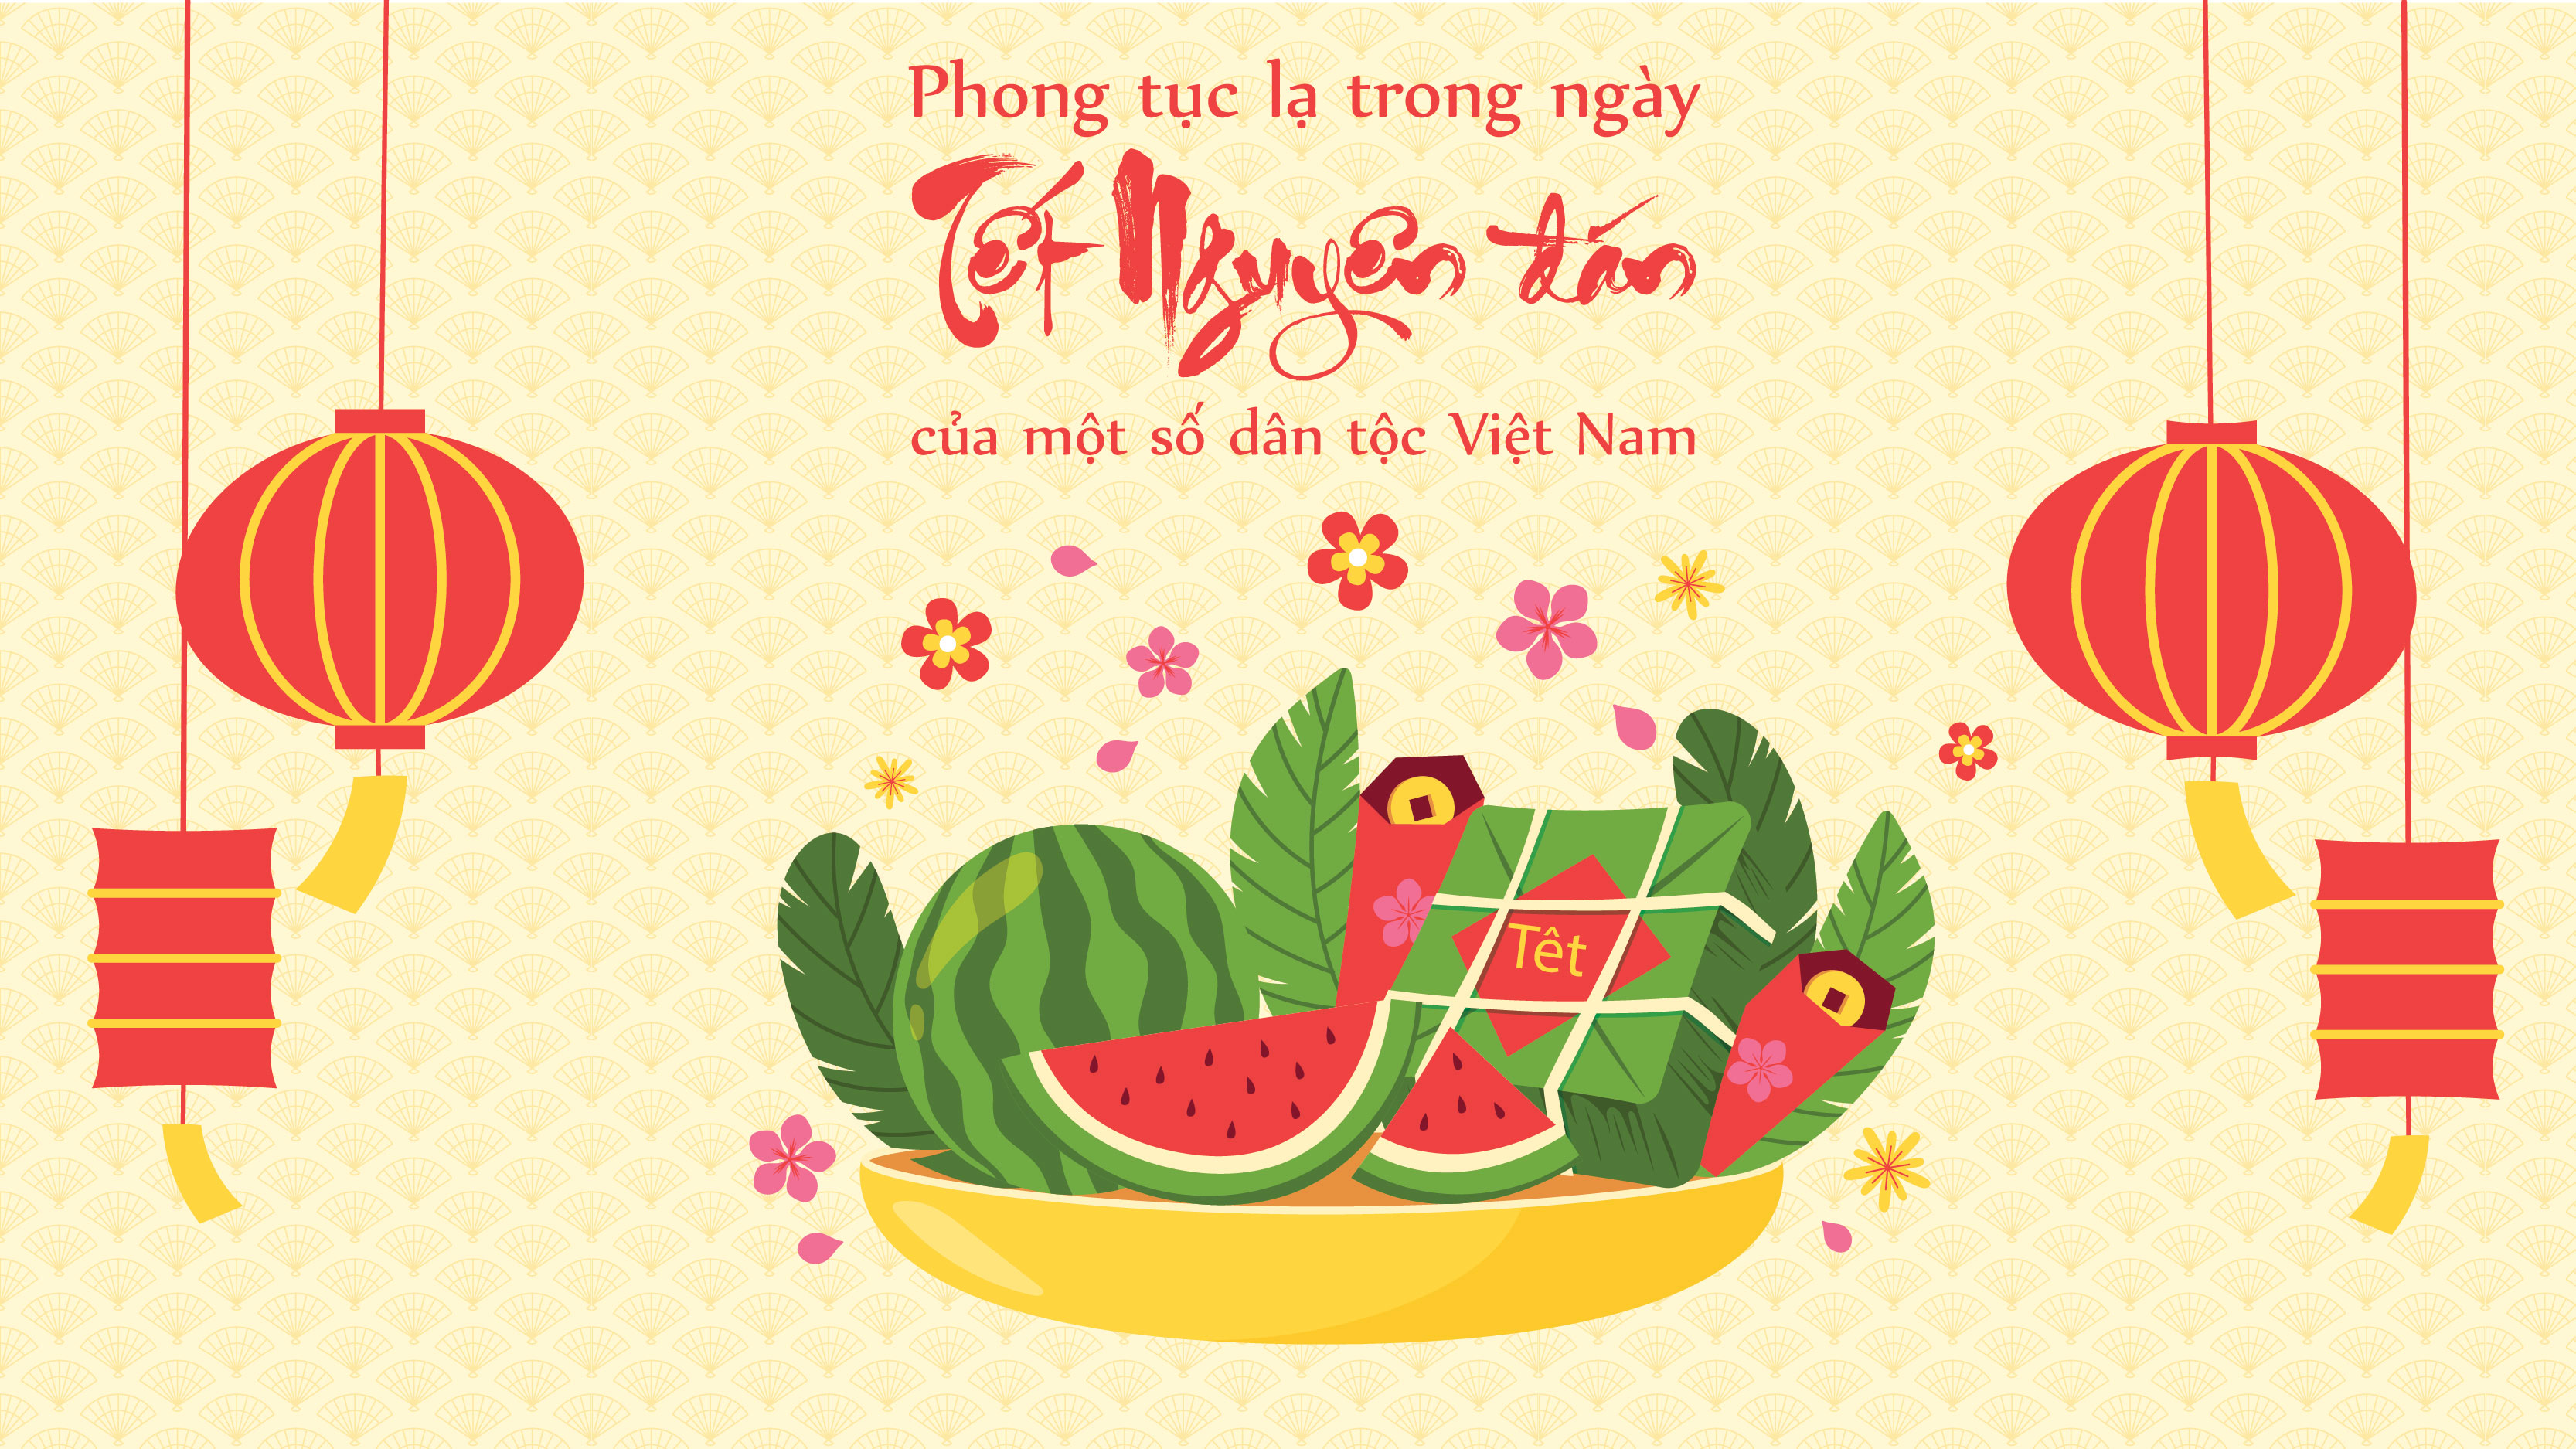 Hãy chiêm ngưỡng cảnh các gia đình Việt Nam đón giao thừa, thắp hương, tục hoa đào, xông đất và tết, tất cả đã đem lại cho mùa xuân mới một không khí đầm ấm và an lành. Hãy cảm nhận và kết nối với nét đẹp truyền thống trong mùa Tết của dân tộc Việt Nam.